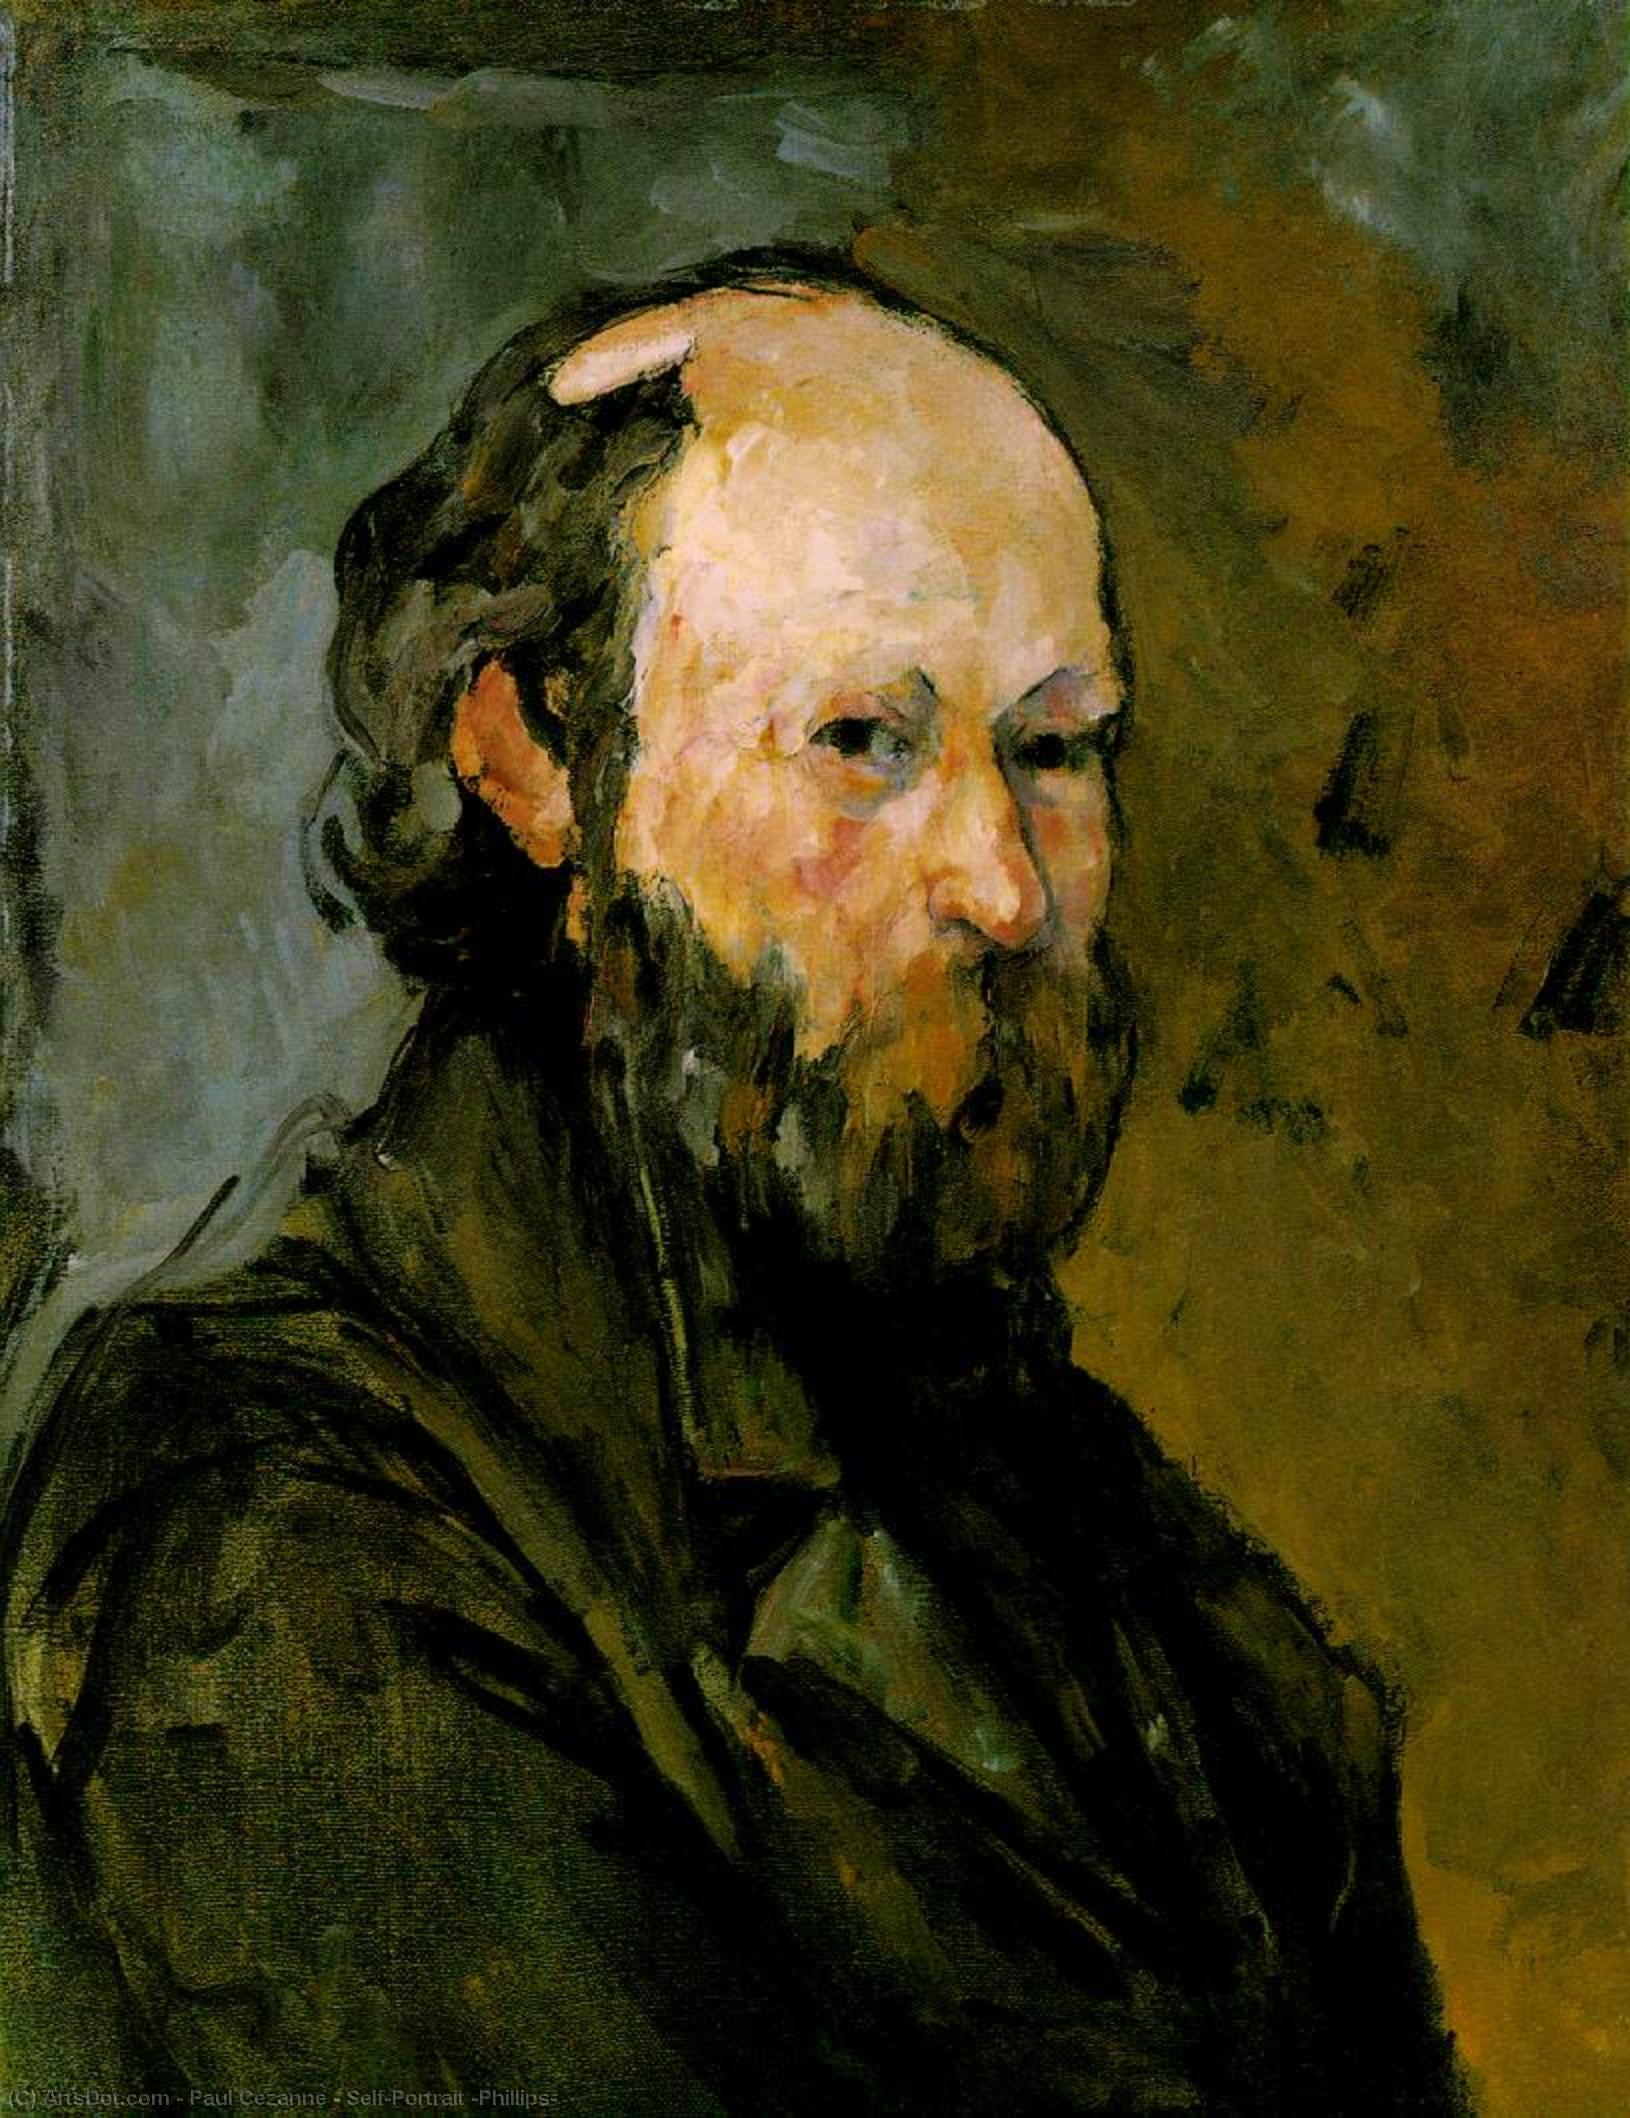 WikiOO.org - Encyclopedia of Fine Arts - Lukisan, Artwork Paul Cezanne - Self-Portrait (Phillips)